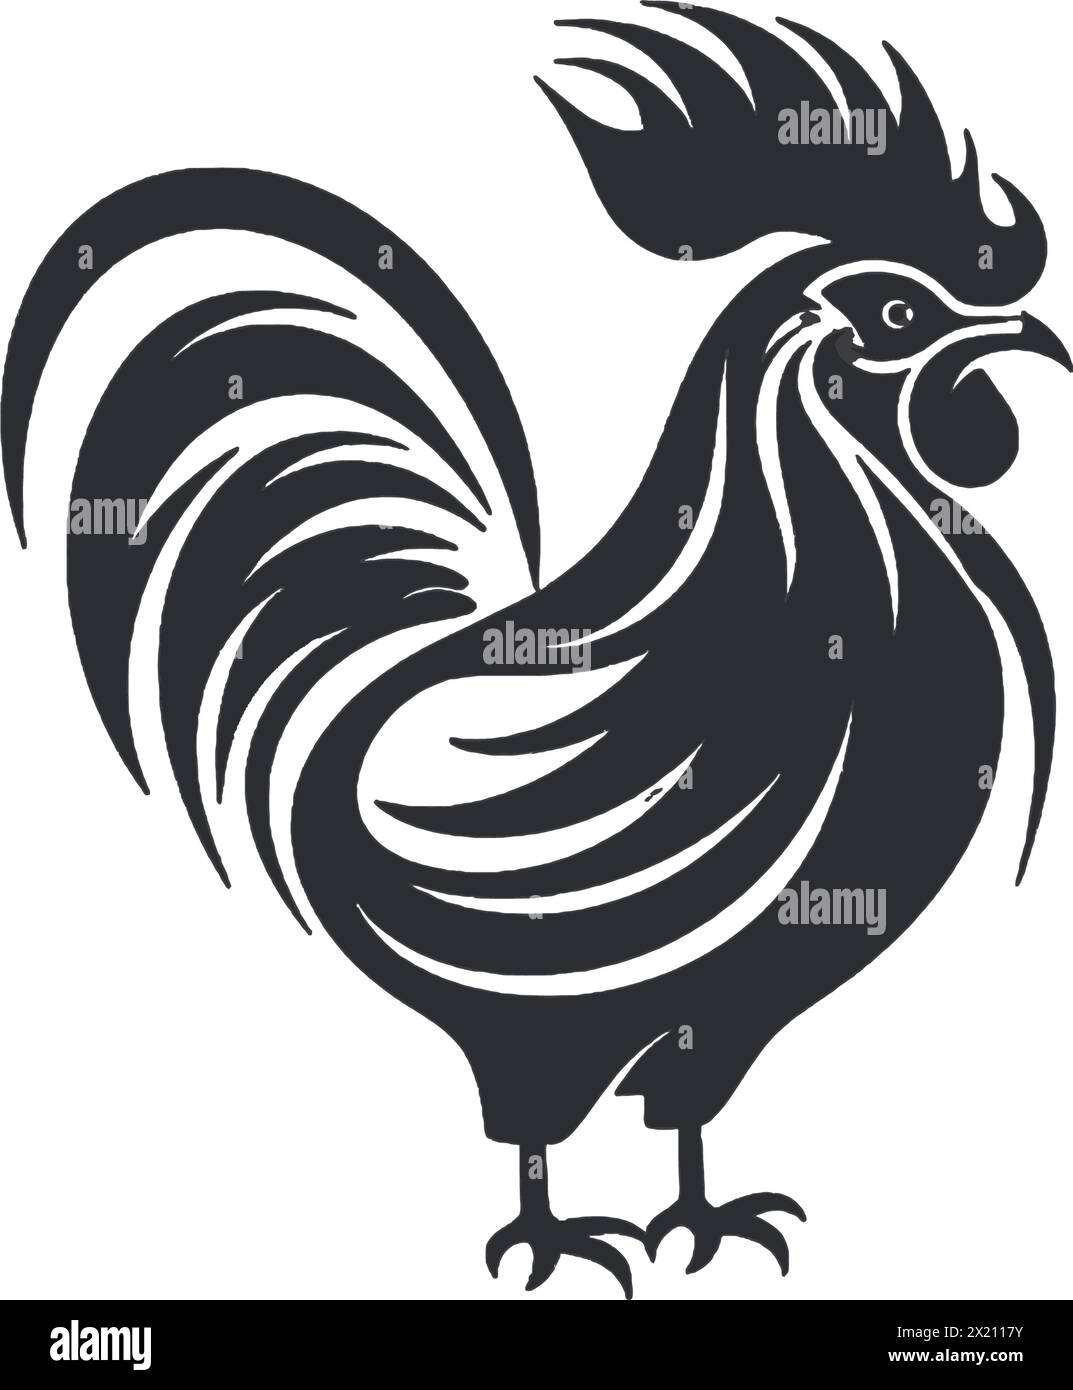 Illustration vectorielle de poule, coq en silhouette noire sur un fond blanc propre, capturant les formes gracieuses de ce vecteur. Illustration de Vecteur